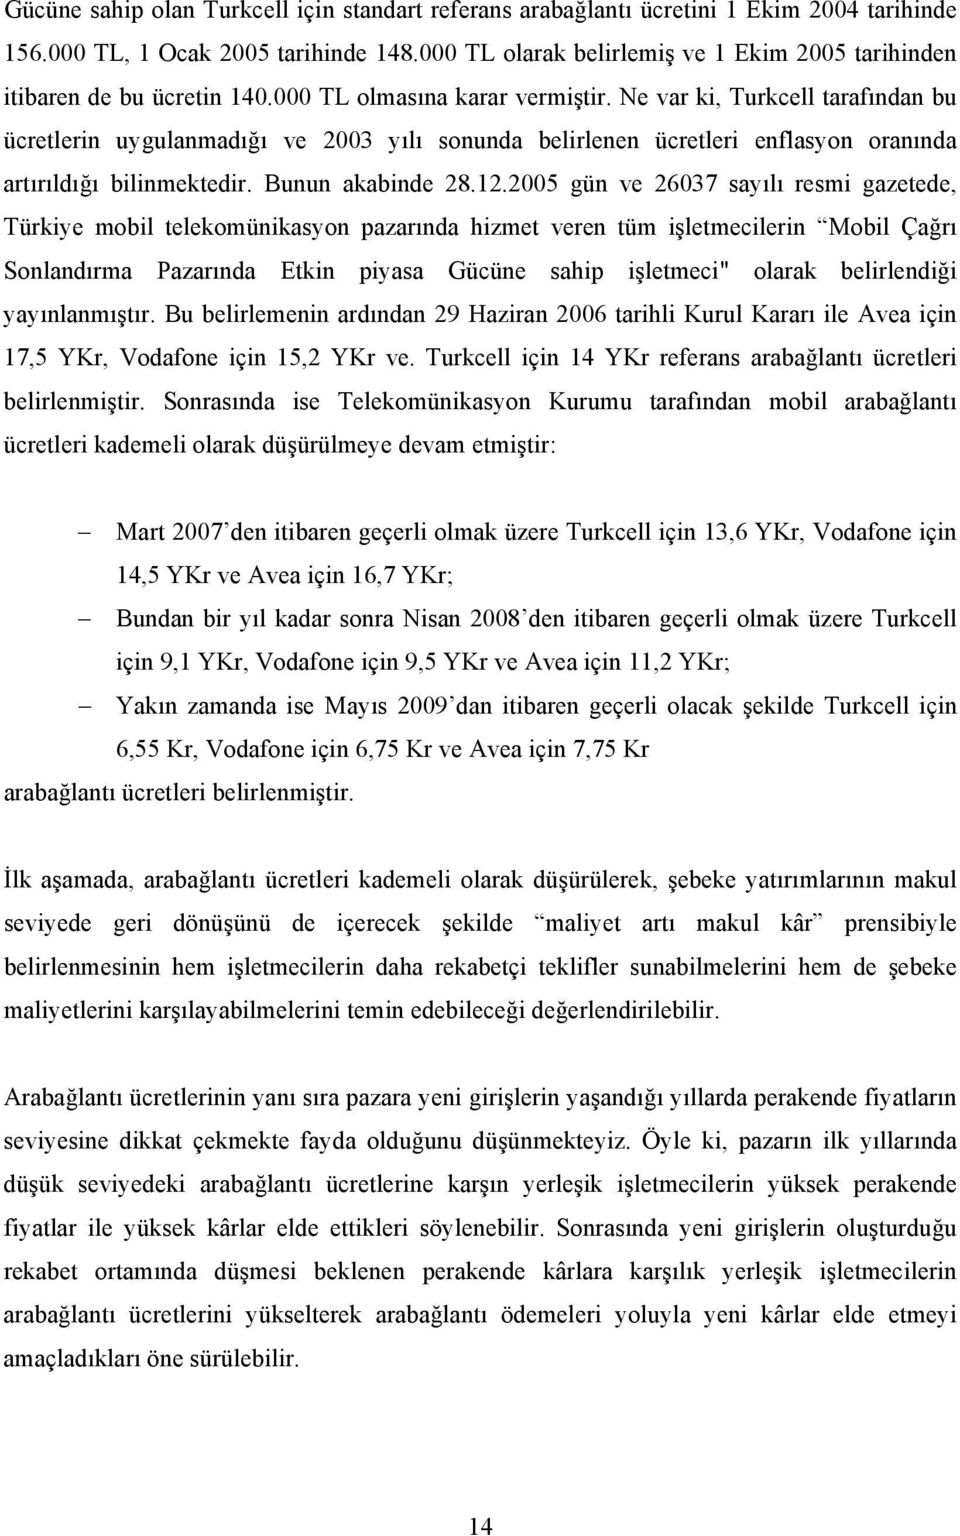 Ne var ki, Turkcell tarafından bu ücretlerin uygulanmadığı ve 2003 yılı sonunda belirlenen ücretleri enflasyon oranında artırıldığı bilinmektedir. Bunun akabinde 28.12.